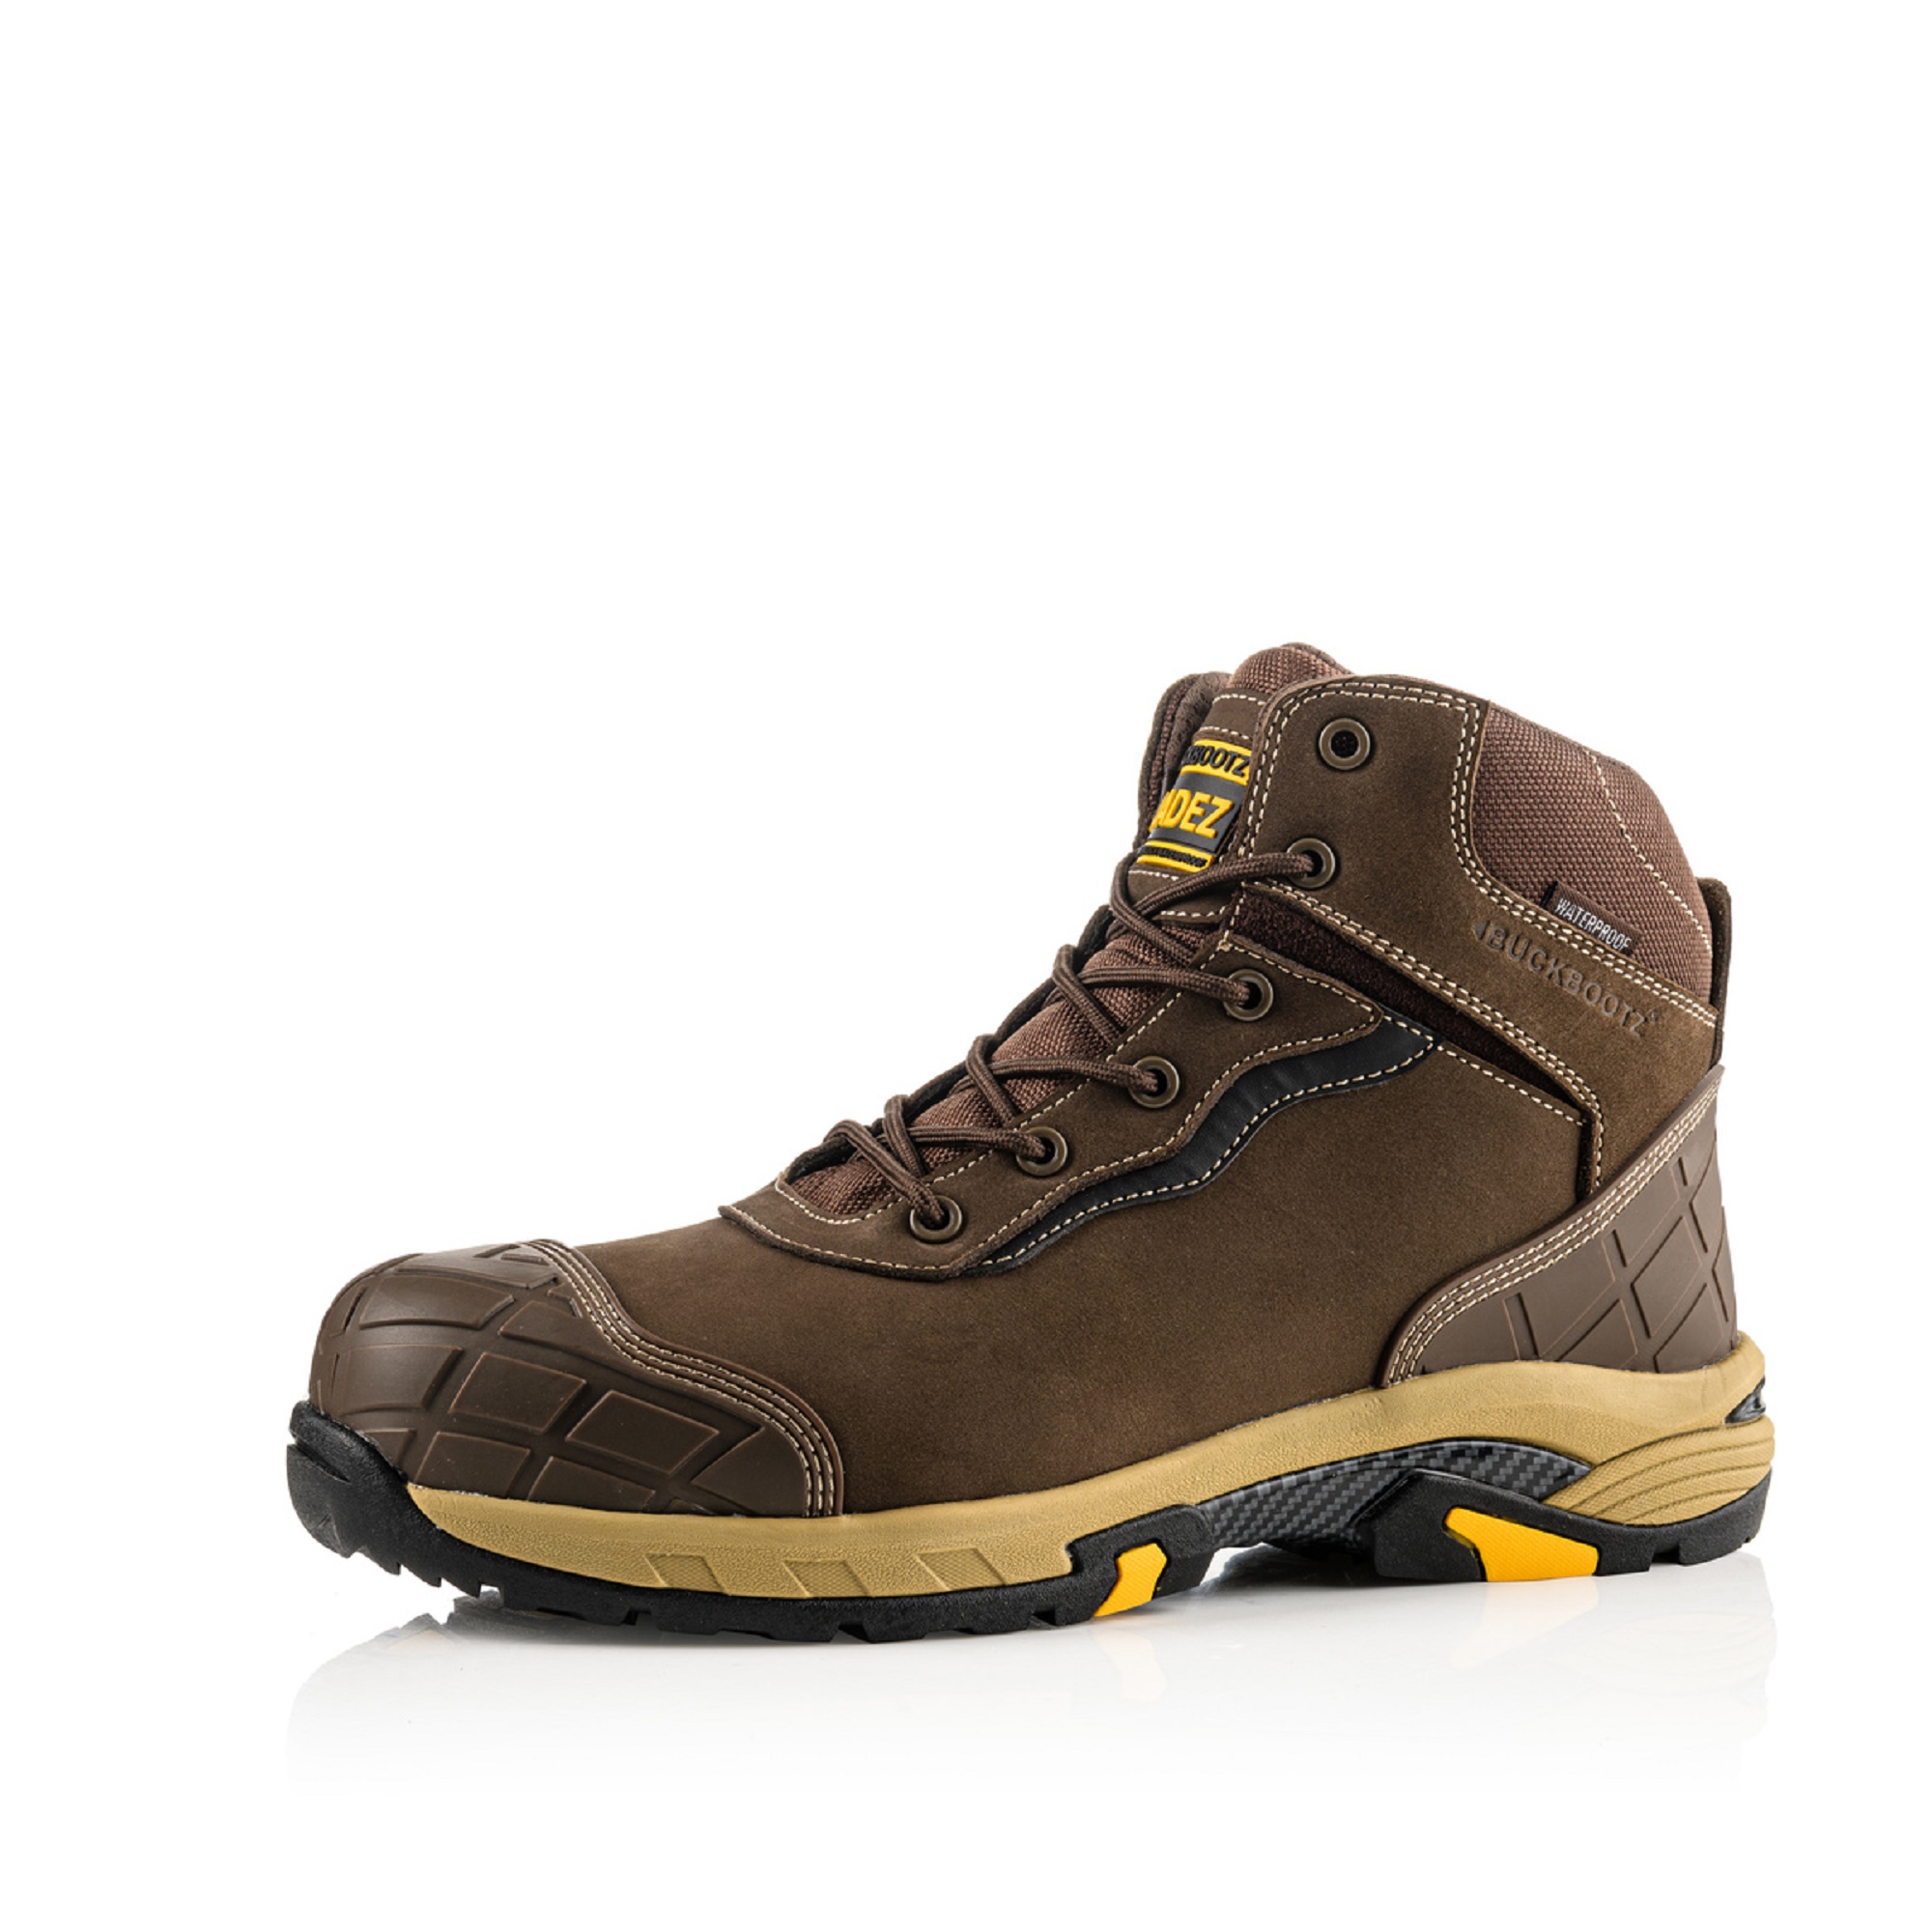 Buckler BuckBootz Tradez Blitz Brown Safety Boots | DQ Services Ltd